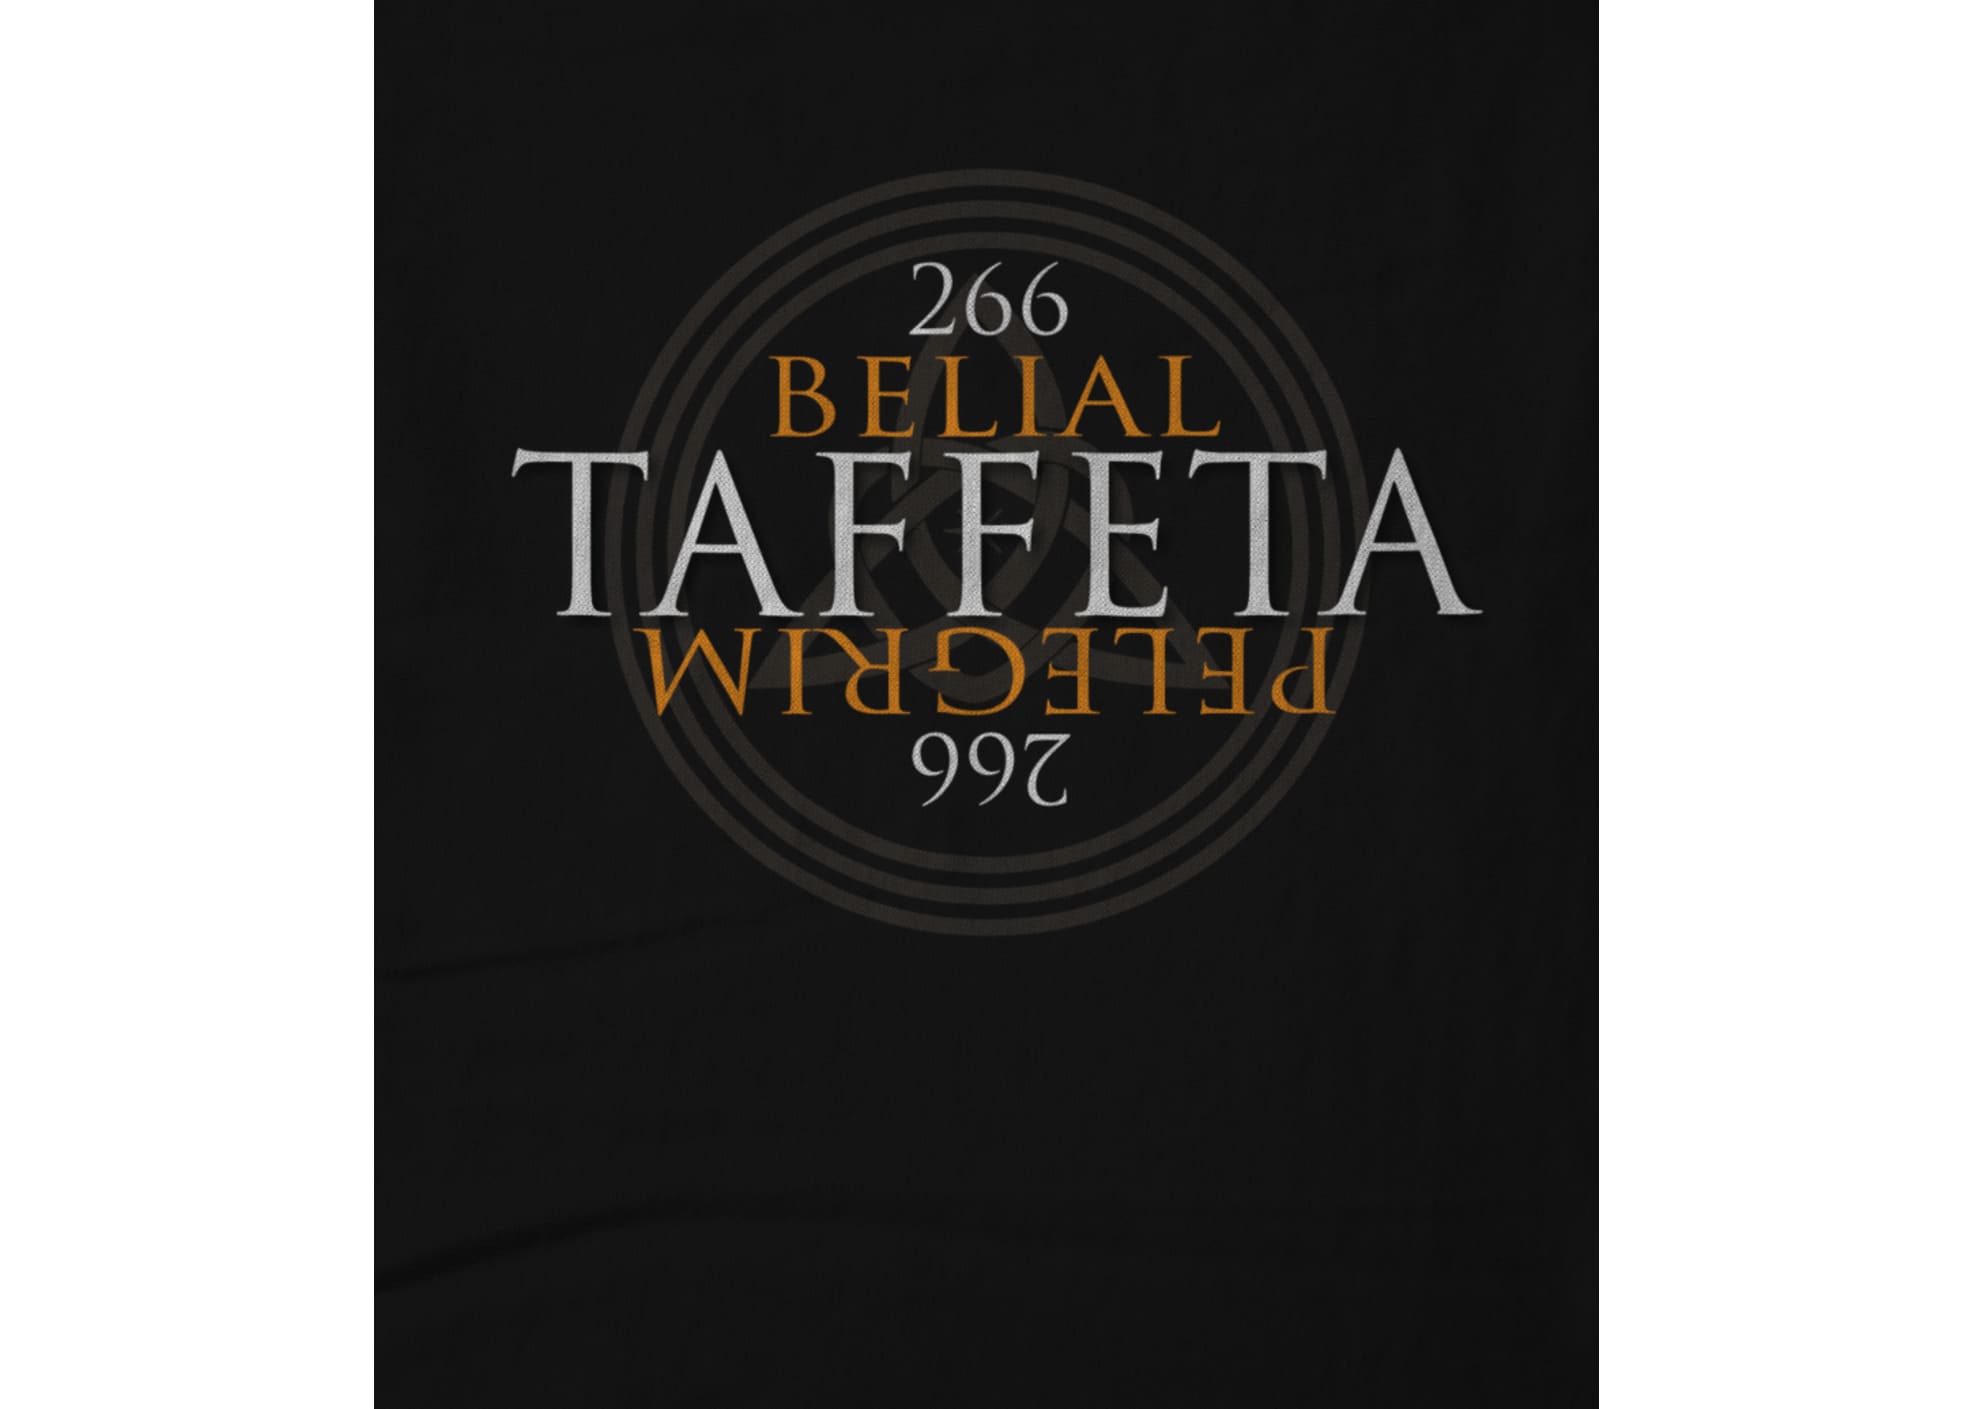 Belial pelegrim official taffeta design 1641612648